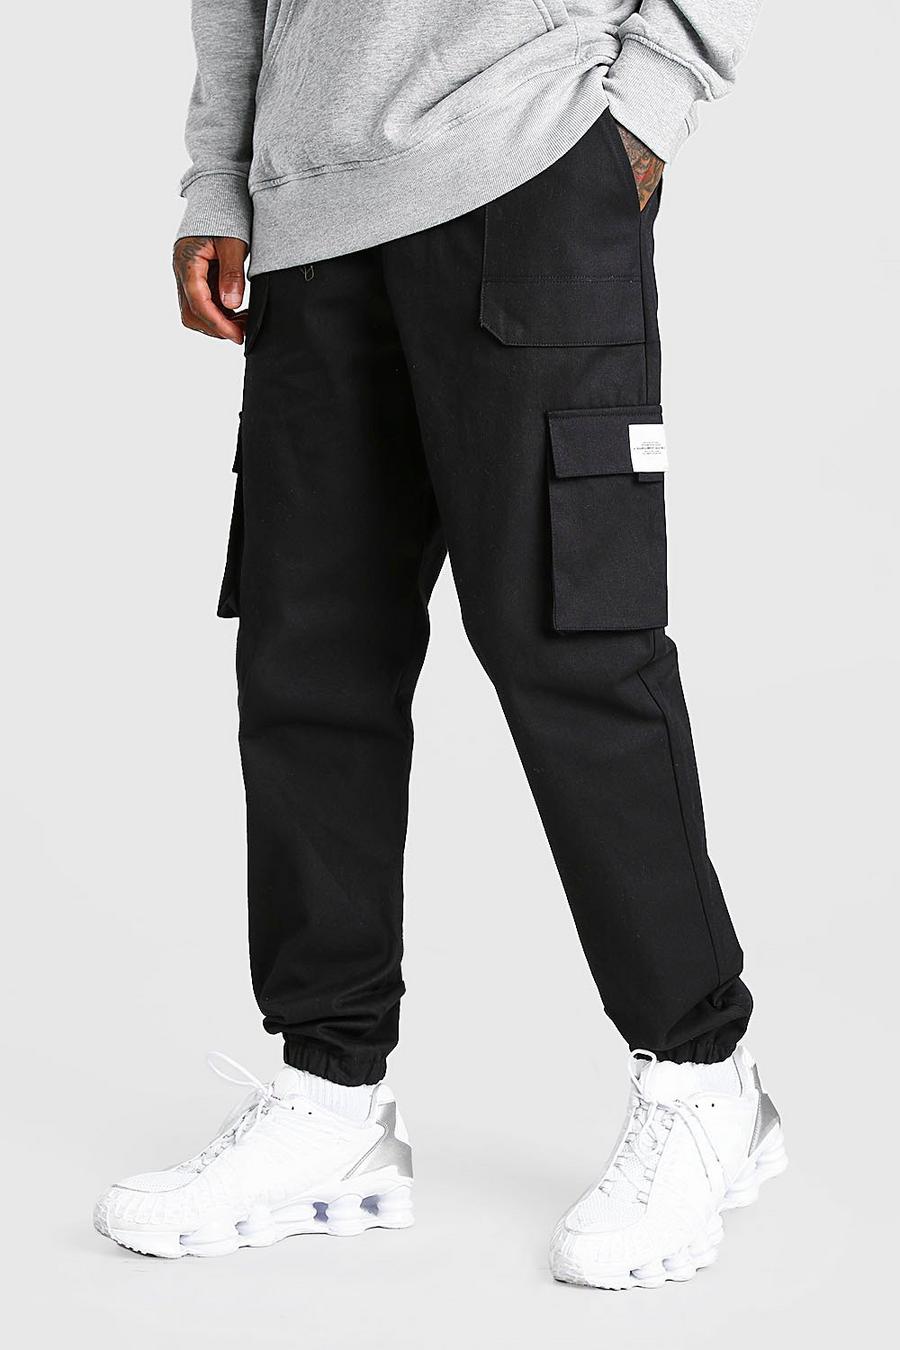 שחור negro מכנסי ריצה דגמ'ח מבד טוויל בגזרה רגילה עם חגורה בחזית